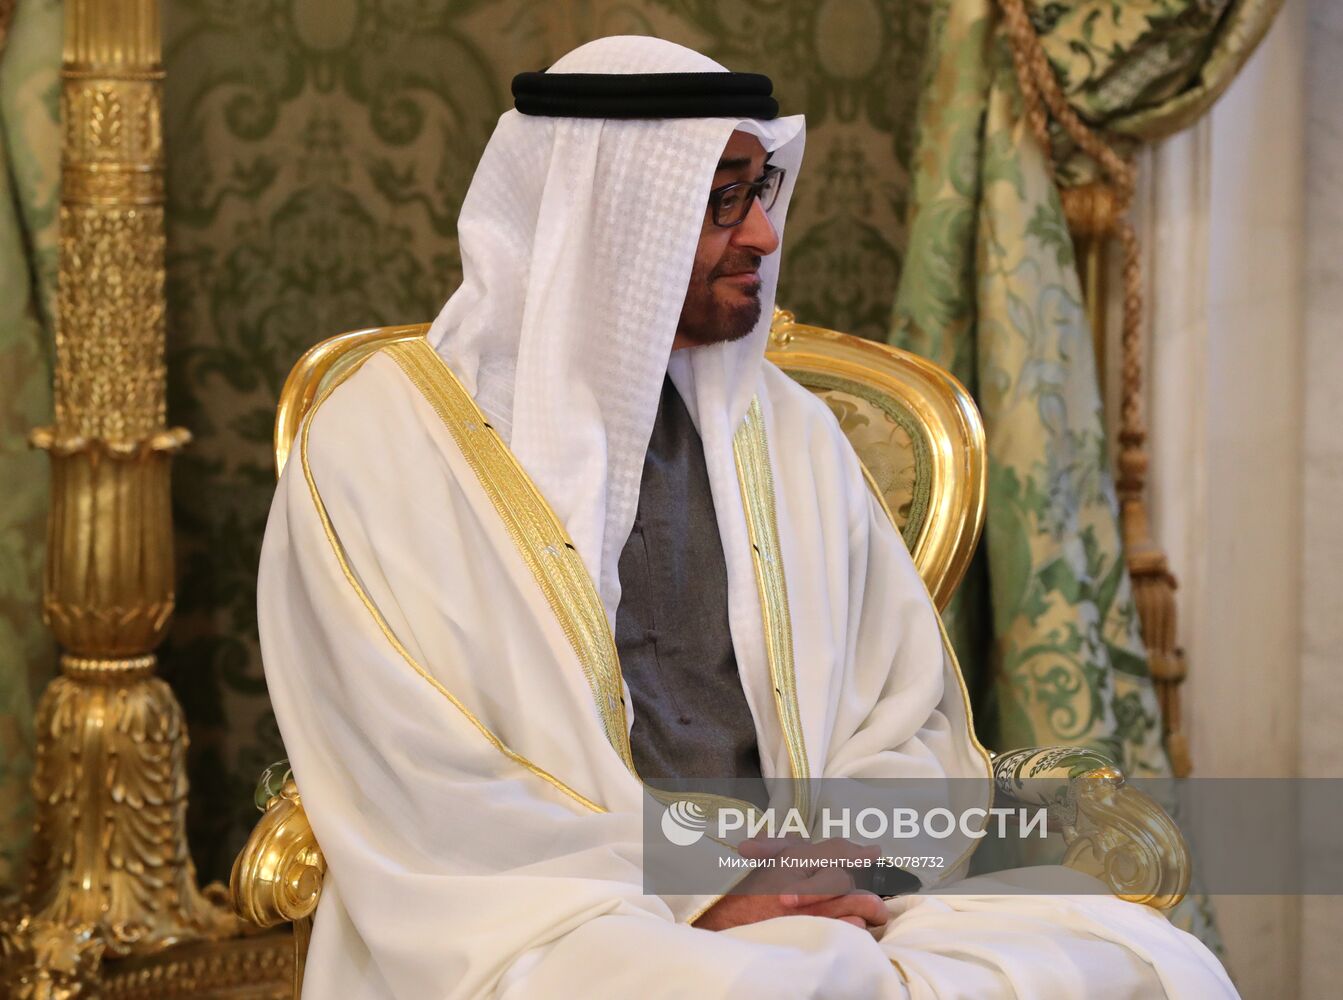 Встреча президента РФ В. Путина с наследным принцем Абу-Даби Мухаммедом Аль Нахайяном